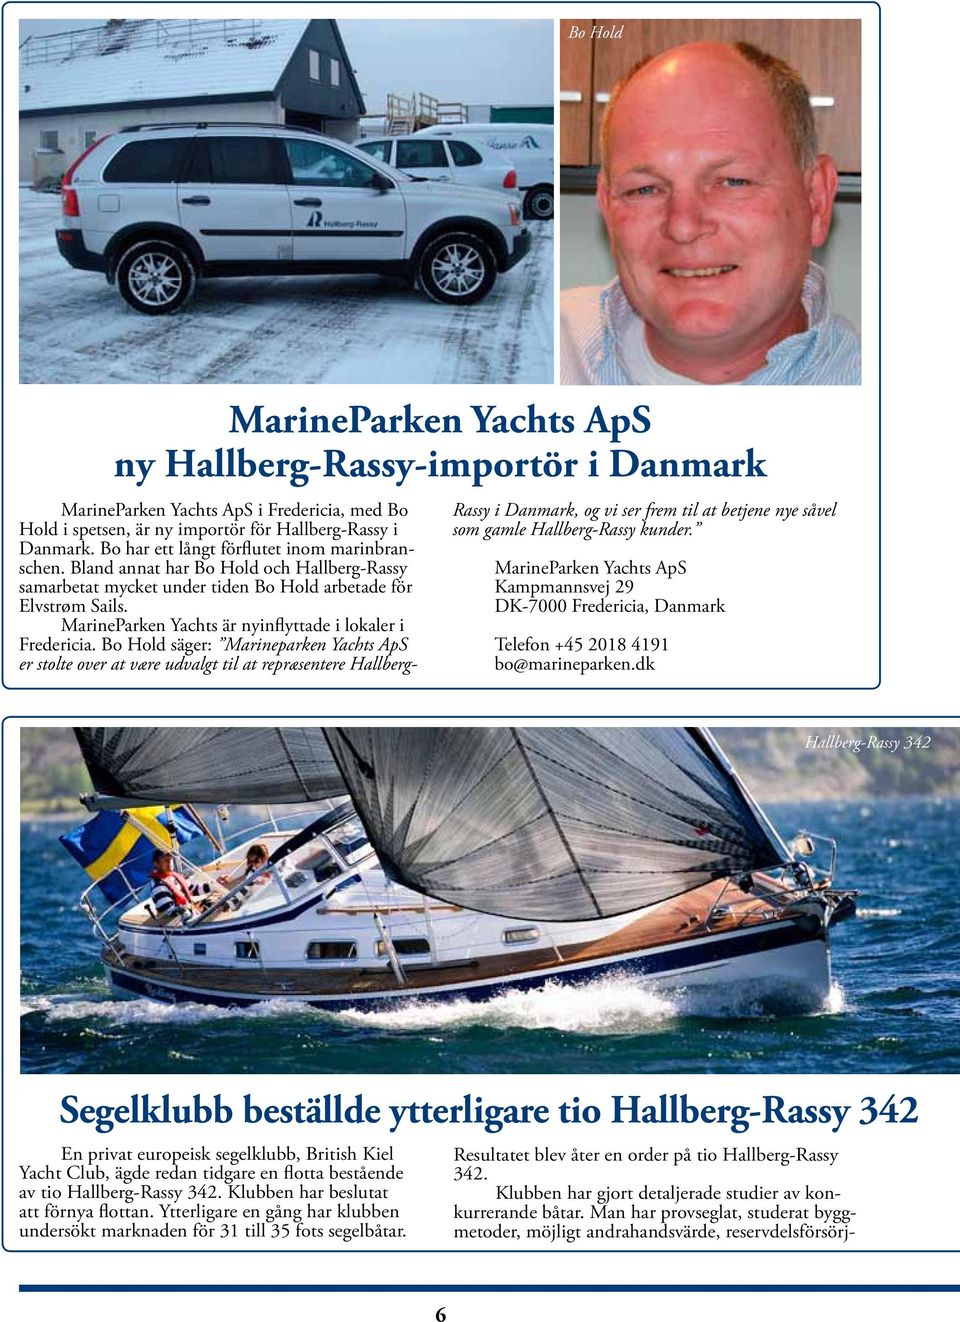 MarineParken Yachts är nyinflyttade i lokaler i Fredericia.